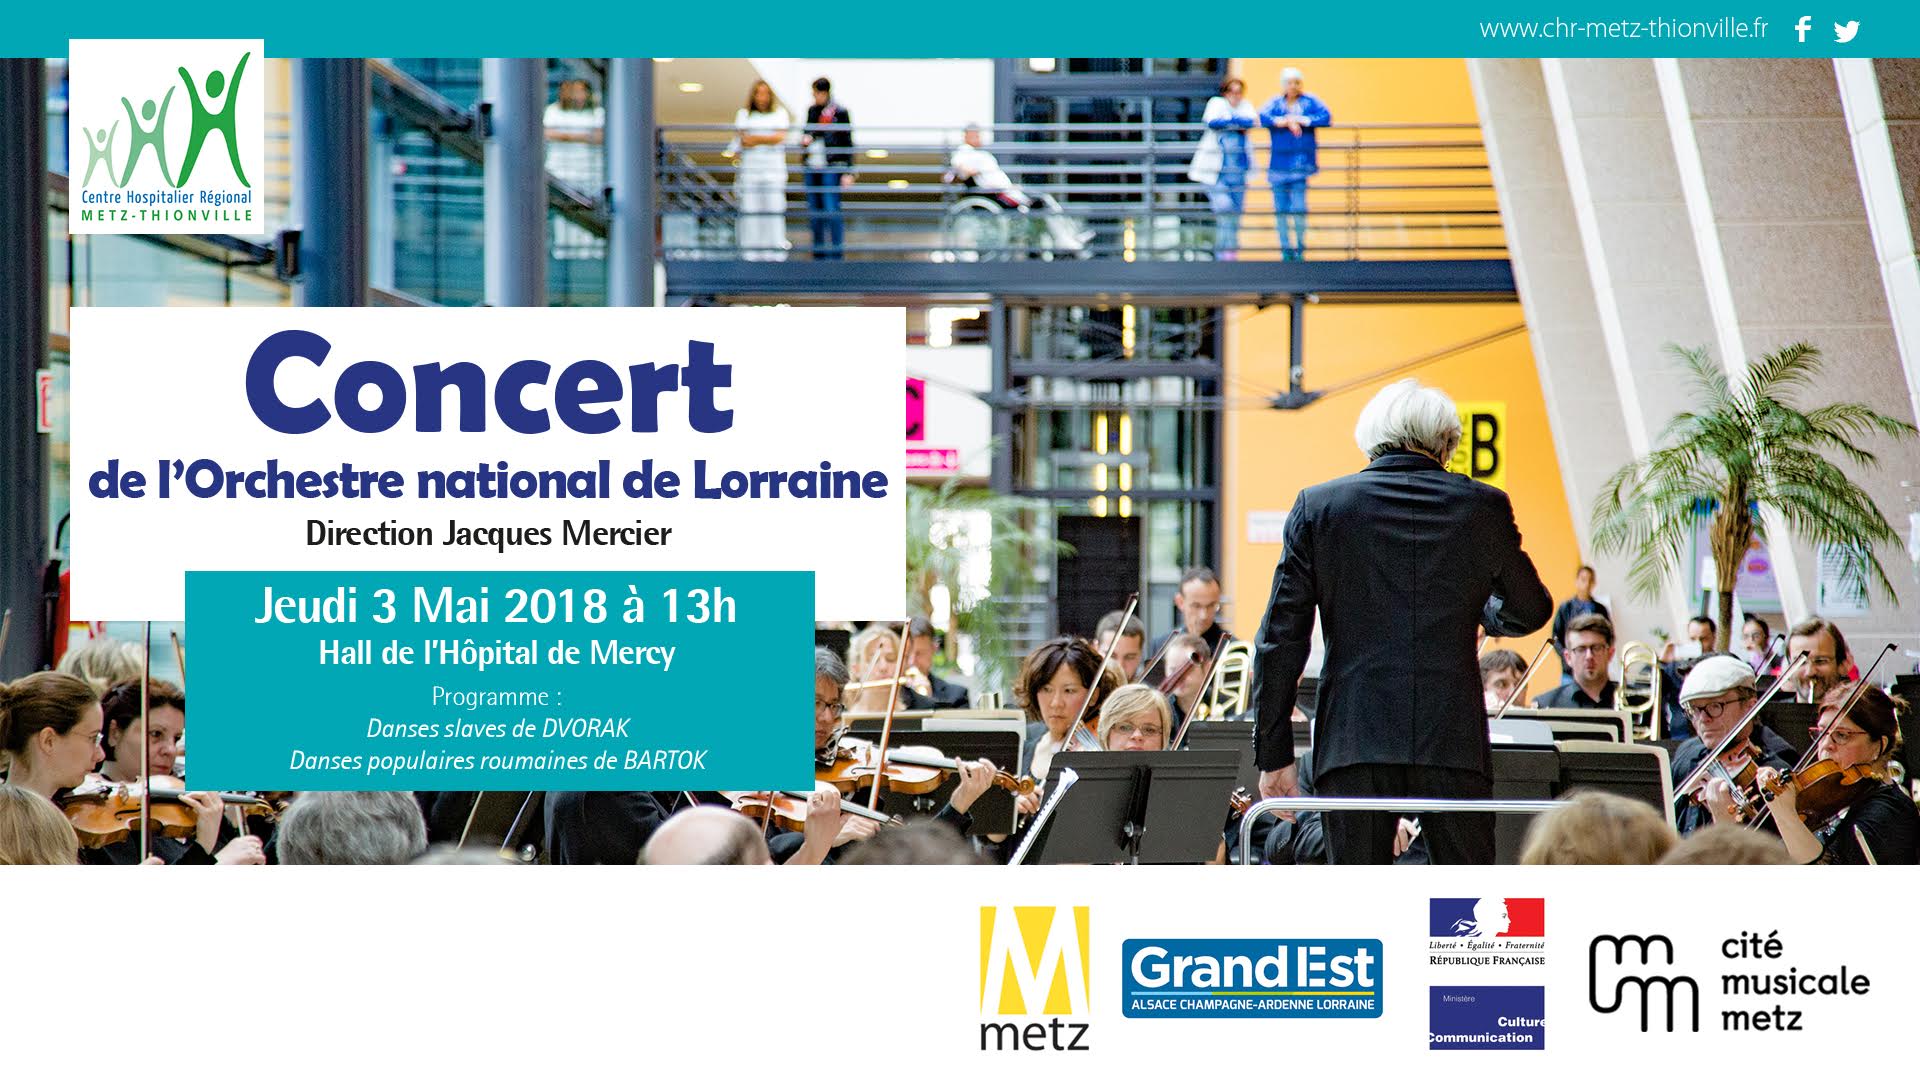 Concert de l'orchestre national de Lorraine